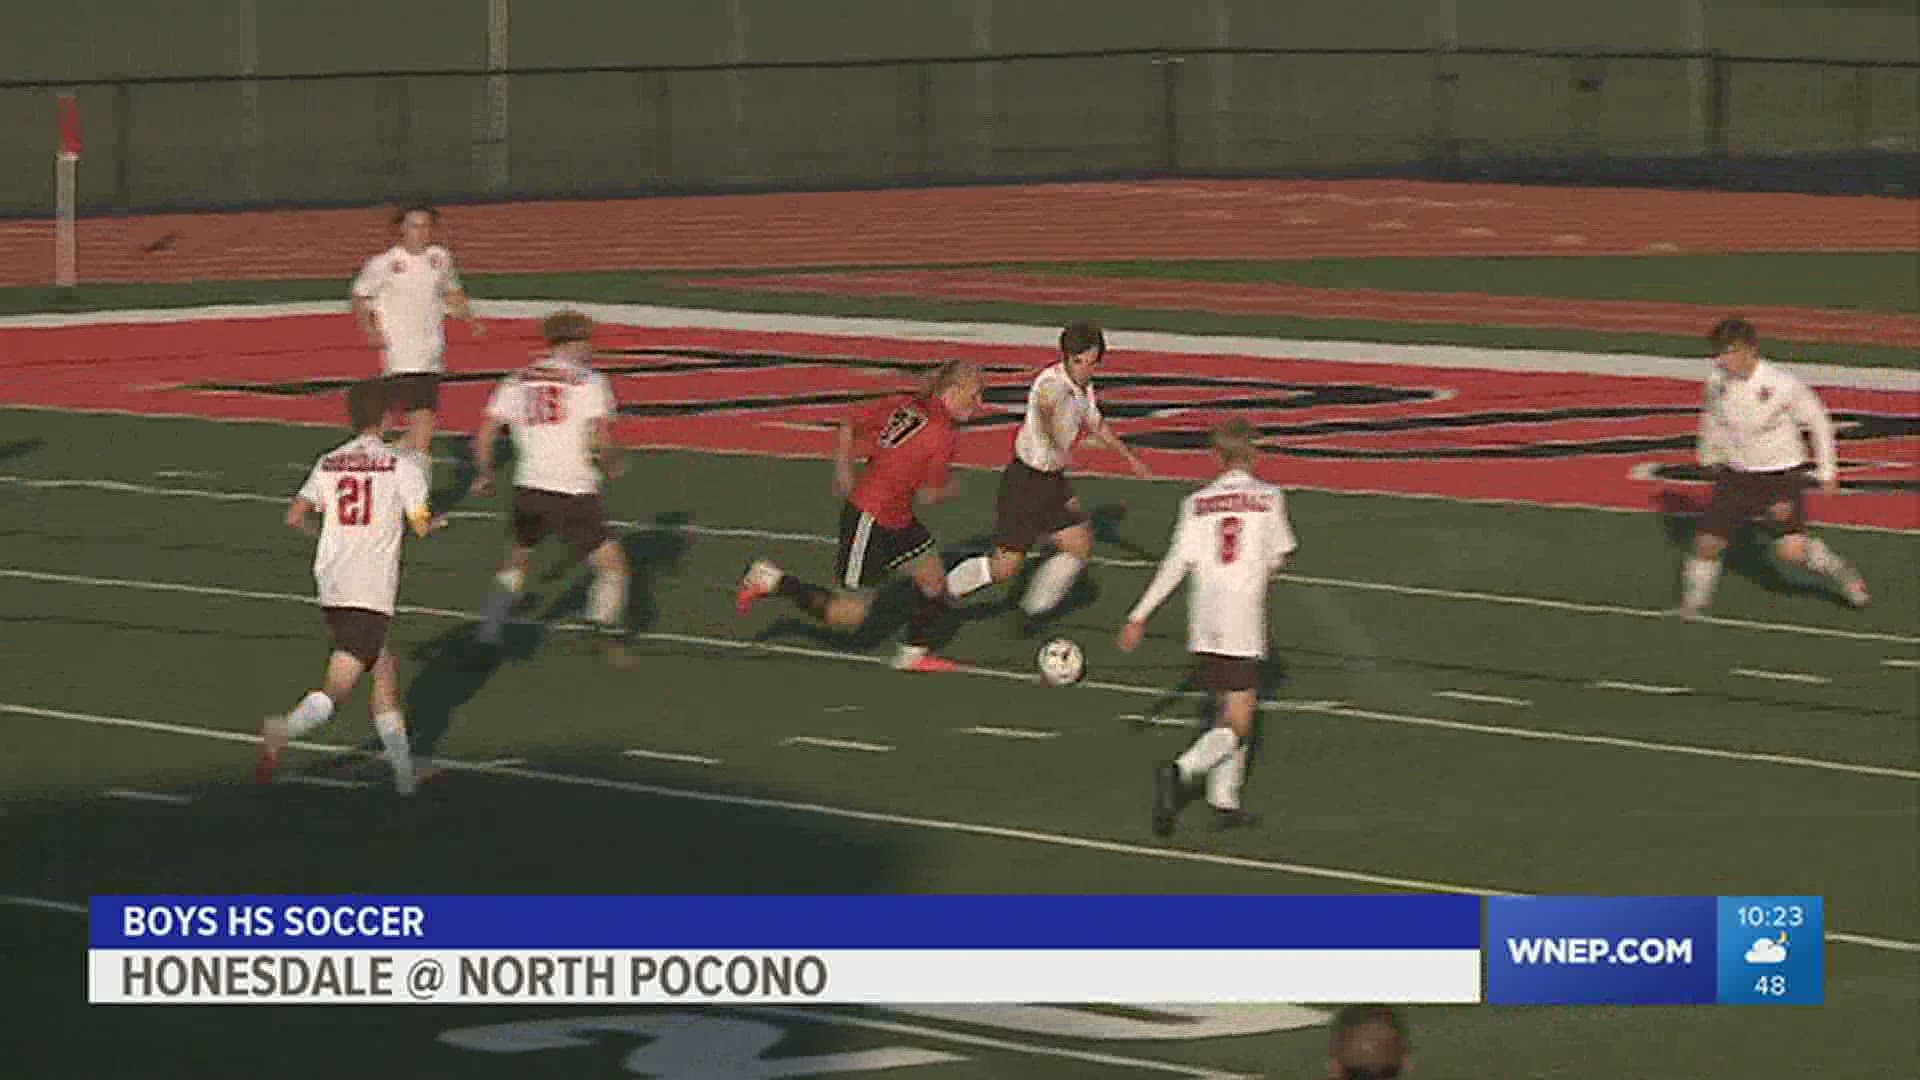 North Pocono defeats Honesdale 3-0 in boys HS soccer